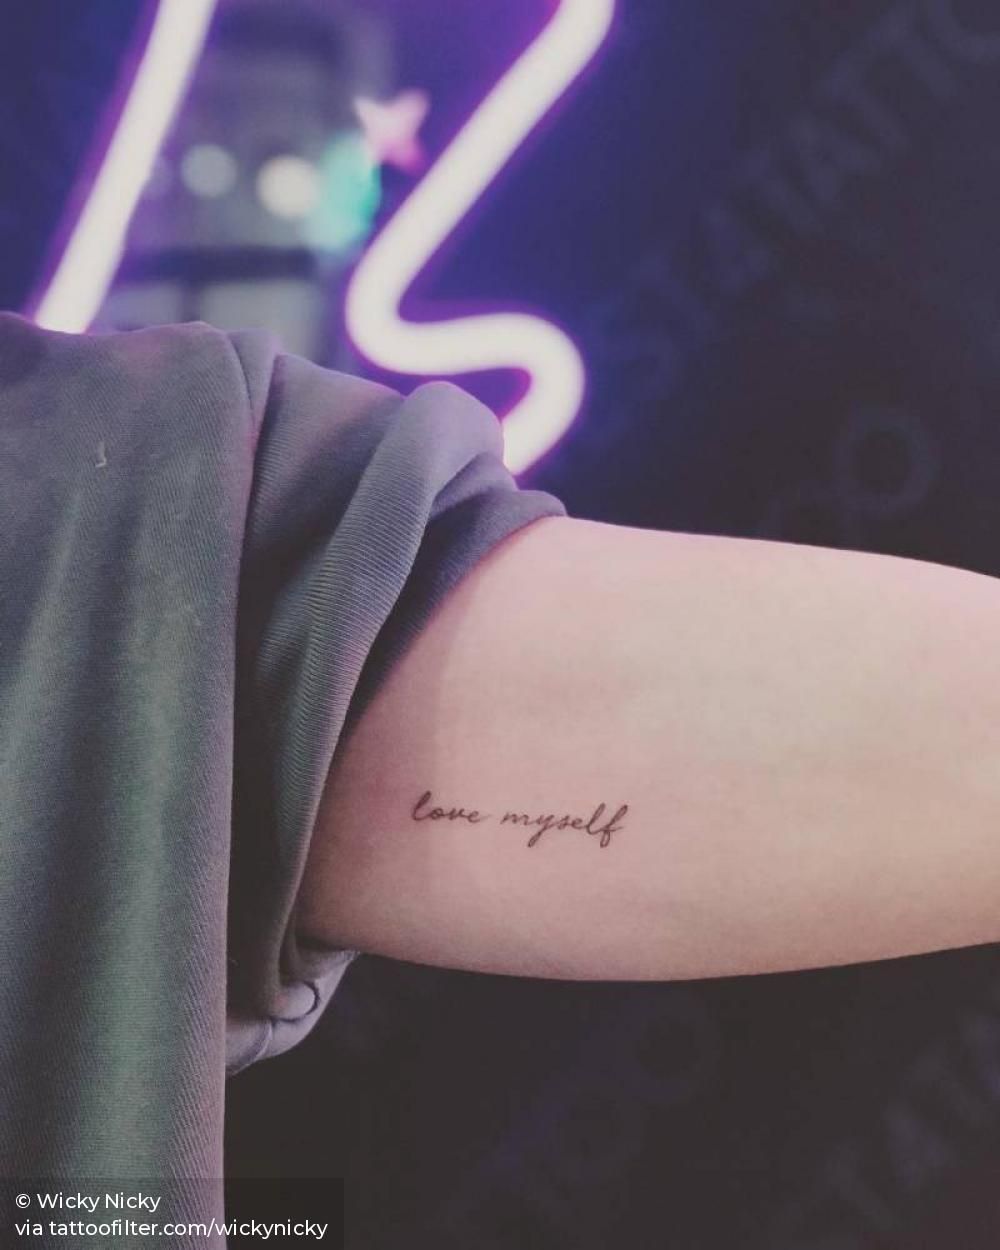 “Love myself” tattoo on the left inner arm.